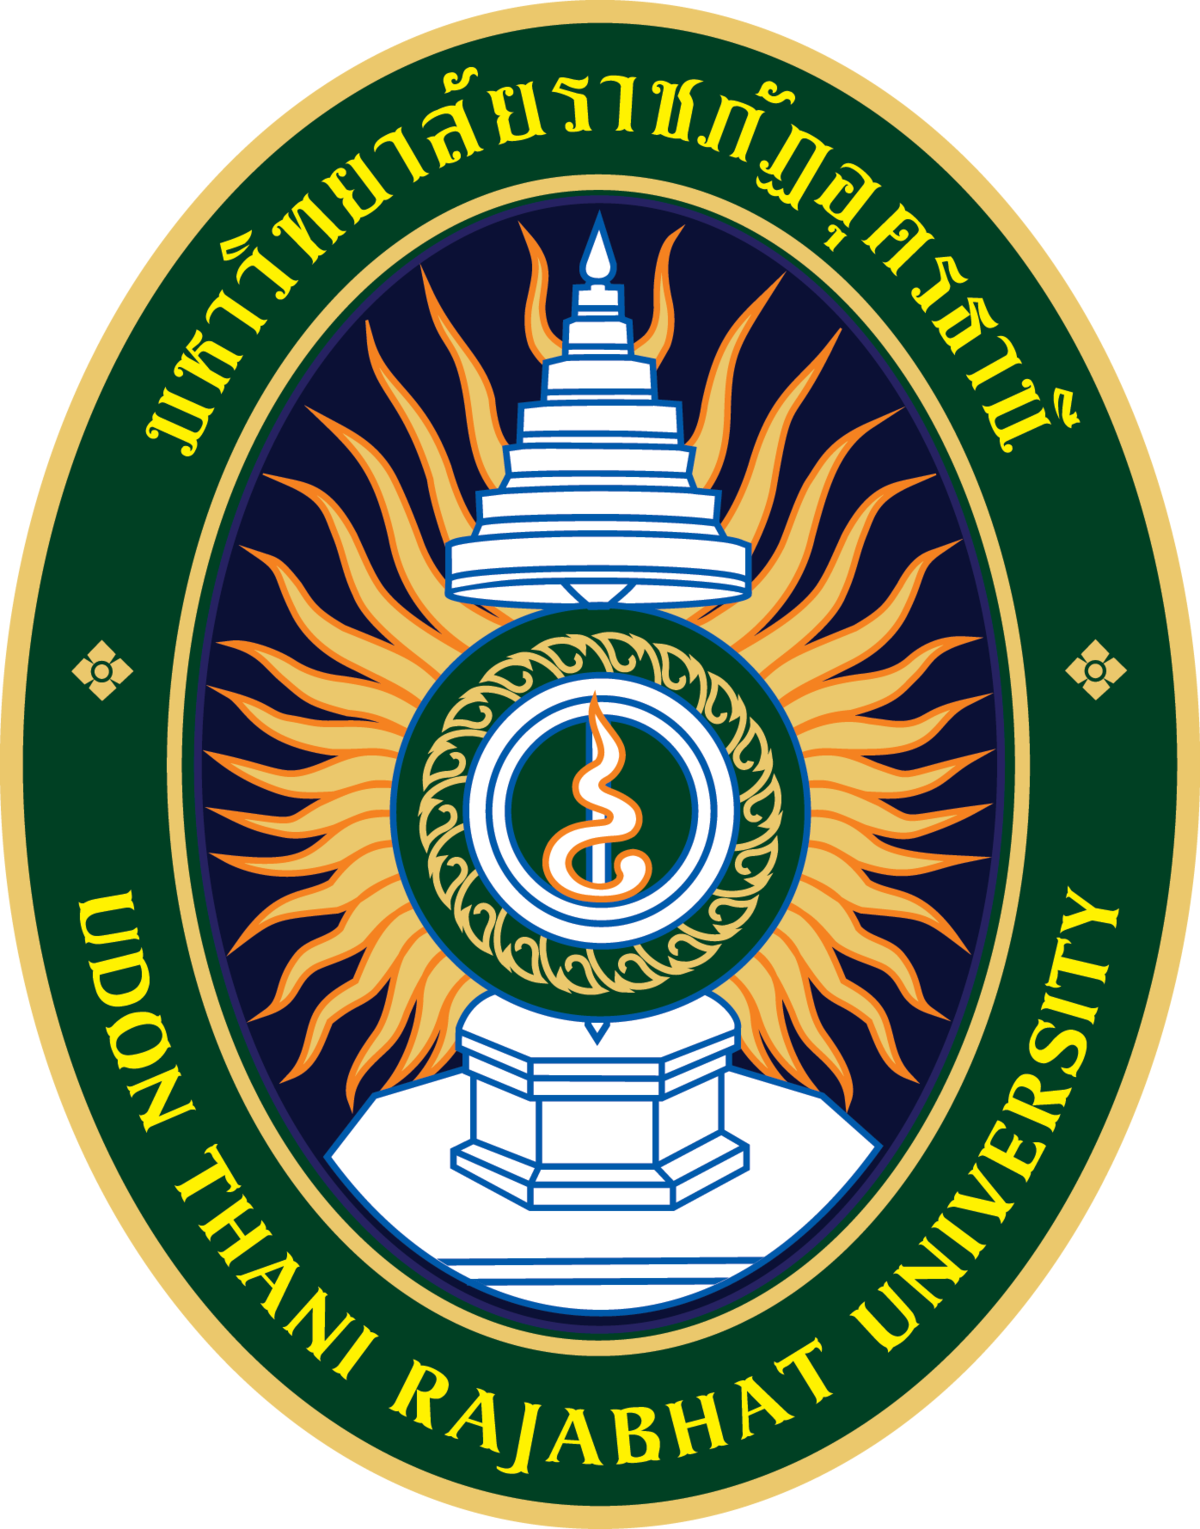 มหาวิทยาลัยราชภัฏอุดรธานี รับสมัครสอบเป็นพนักงานมหาวิทยาลัย 3 อัตรา สมัครทางไปรษณีย์ ตั้งแต่วันที่ 6 -10 กันยายน 2564